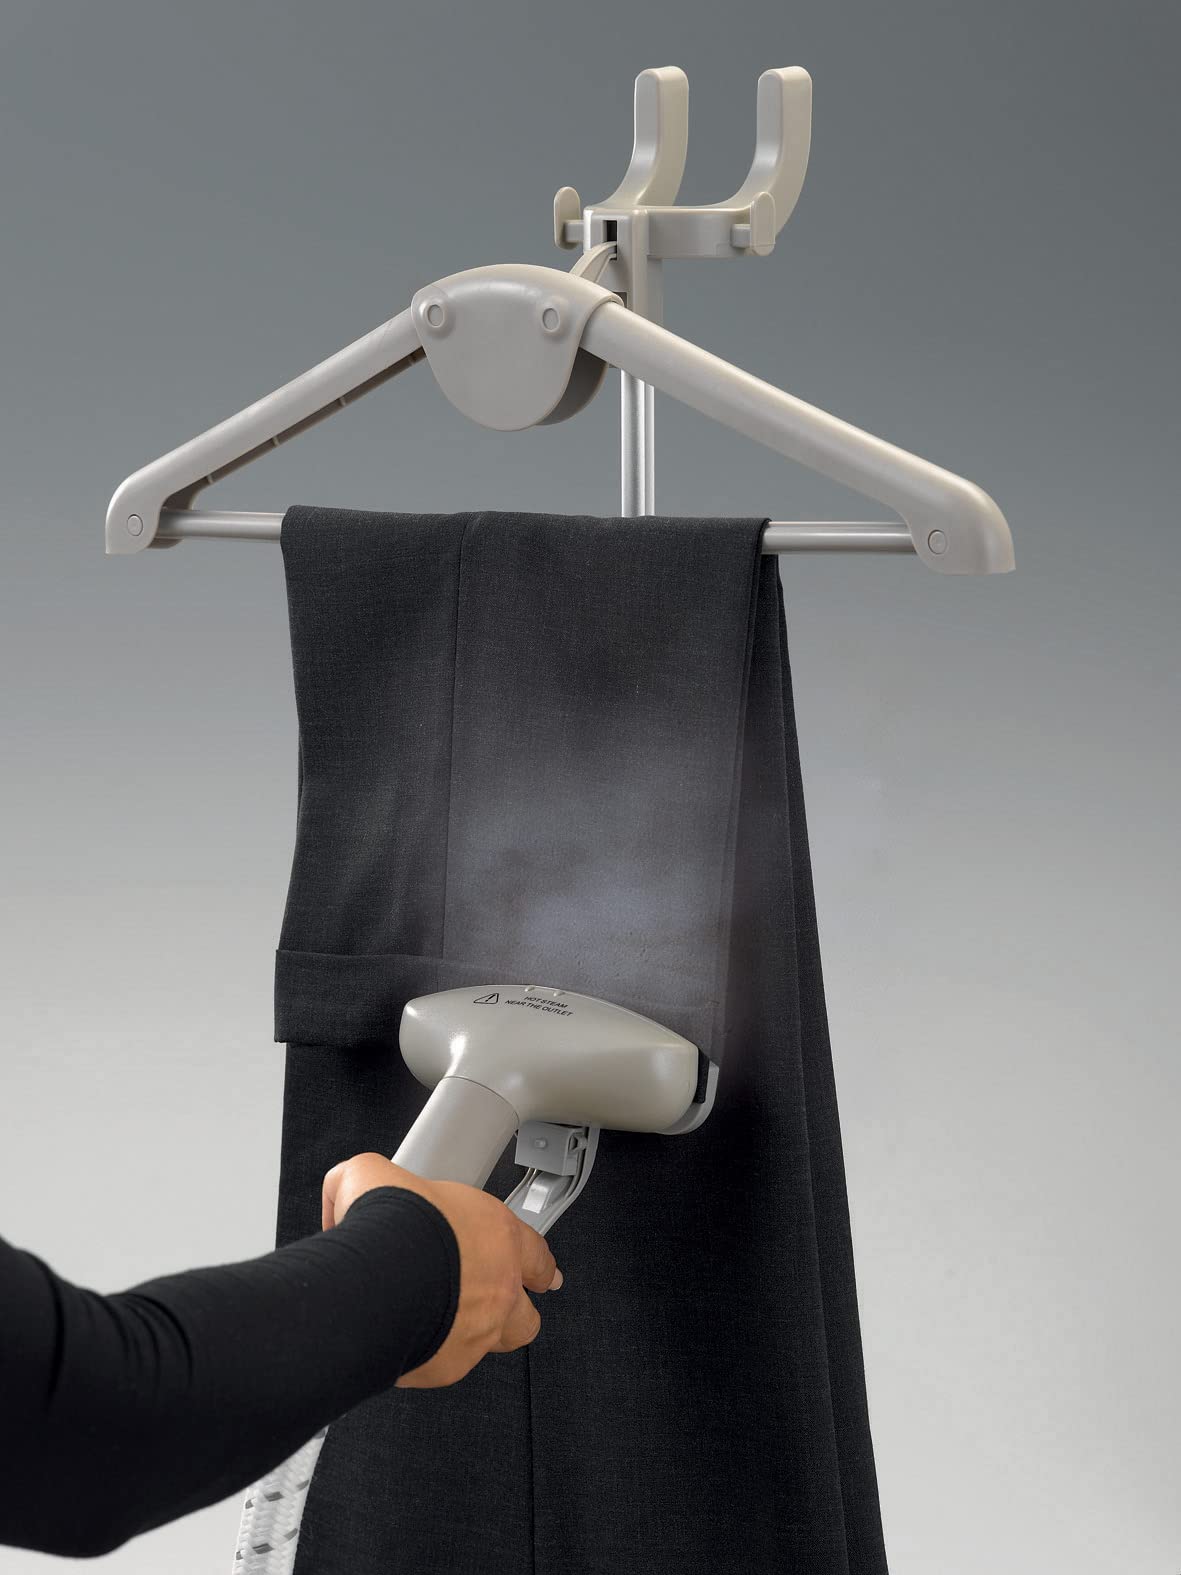  كينوود مكواة بخار للملابس بقدرة 1500 واط مع خزان مياه سعة 2 لتر، عجلات دوارة